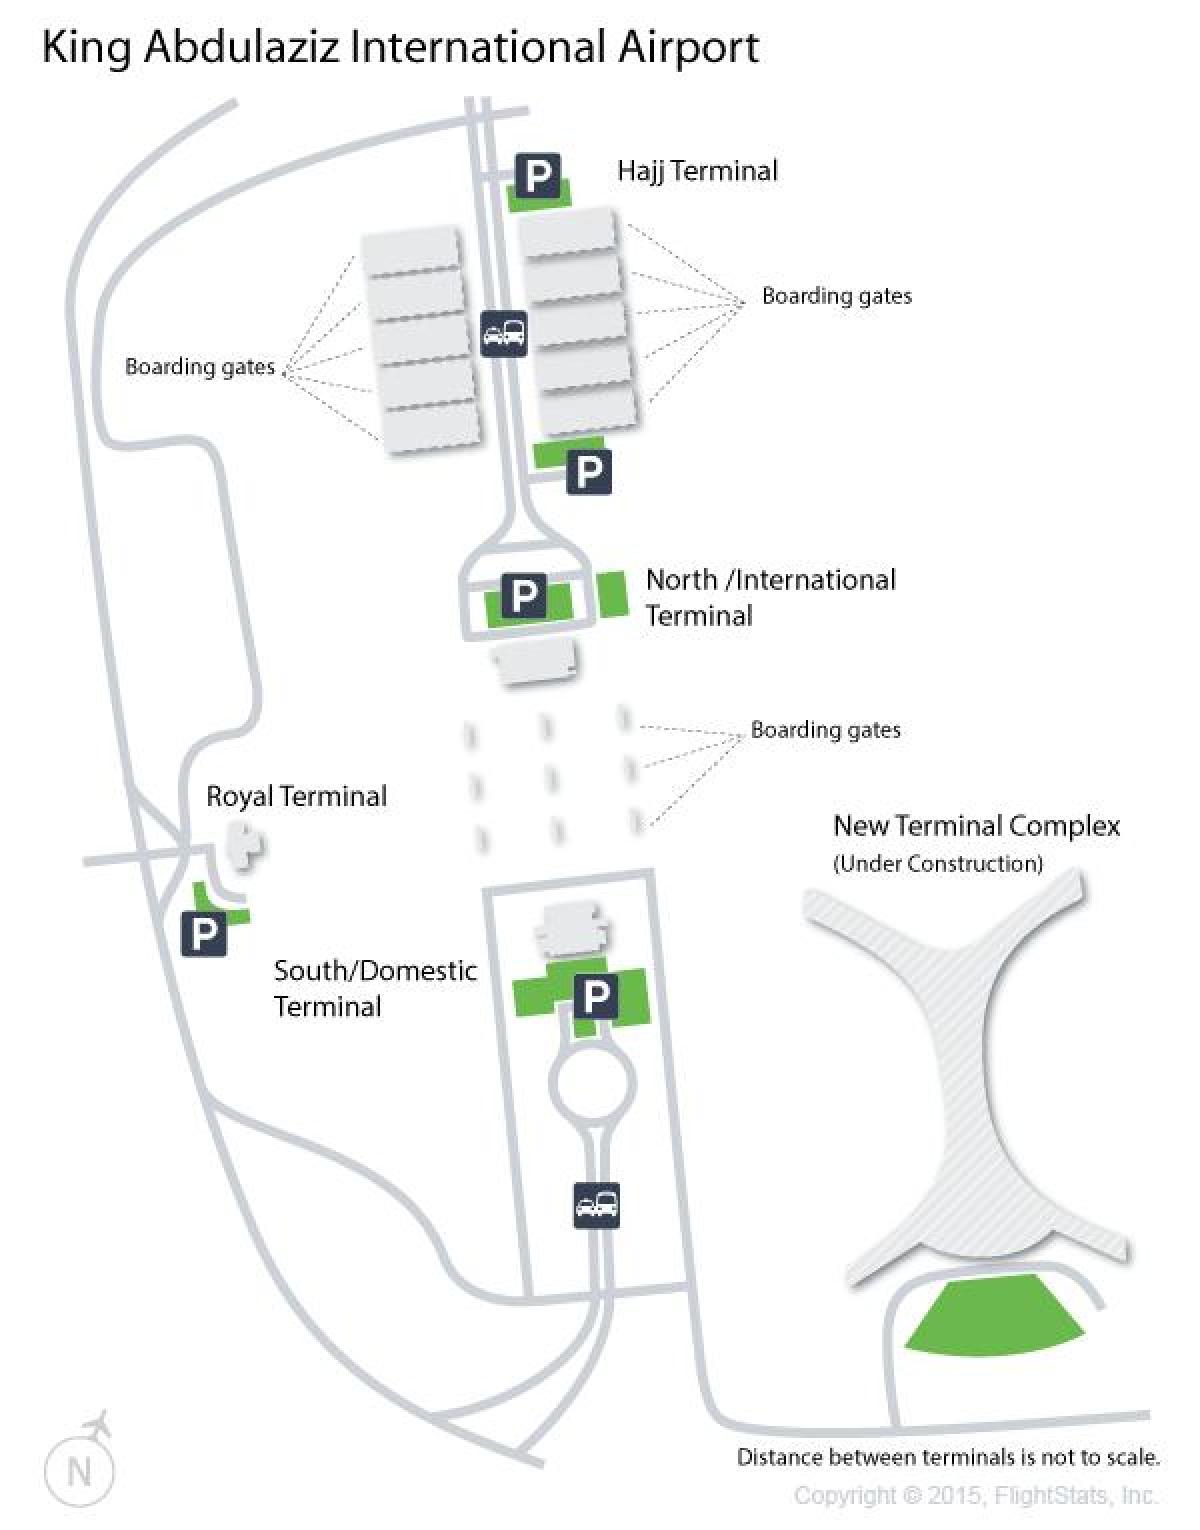 Plan des terminaux aéroport de Mecca (Makkah)